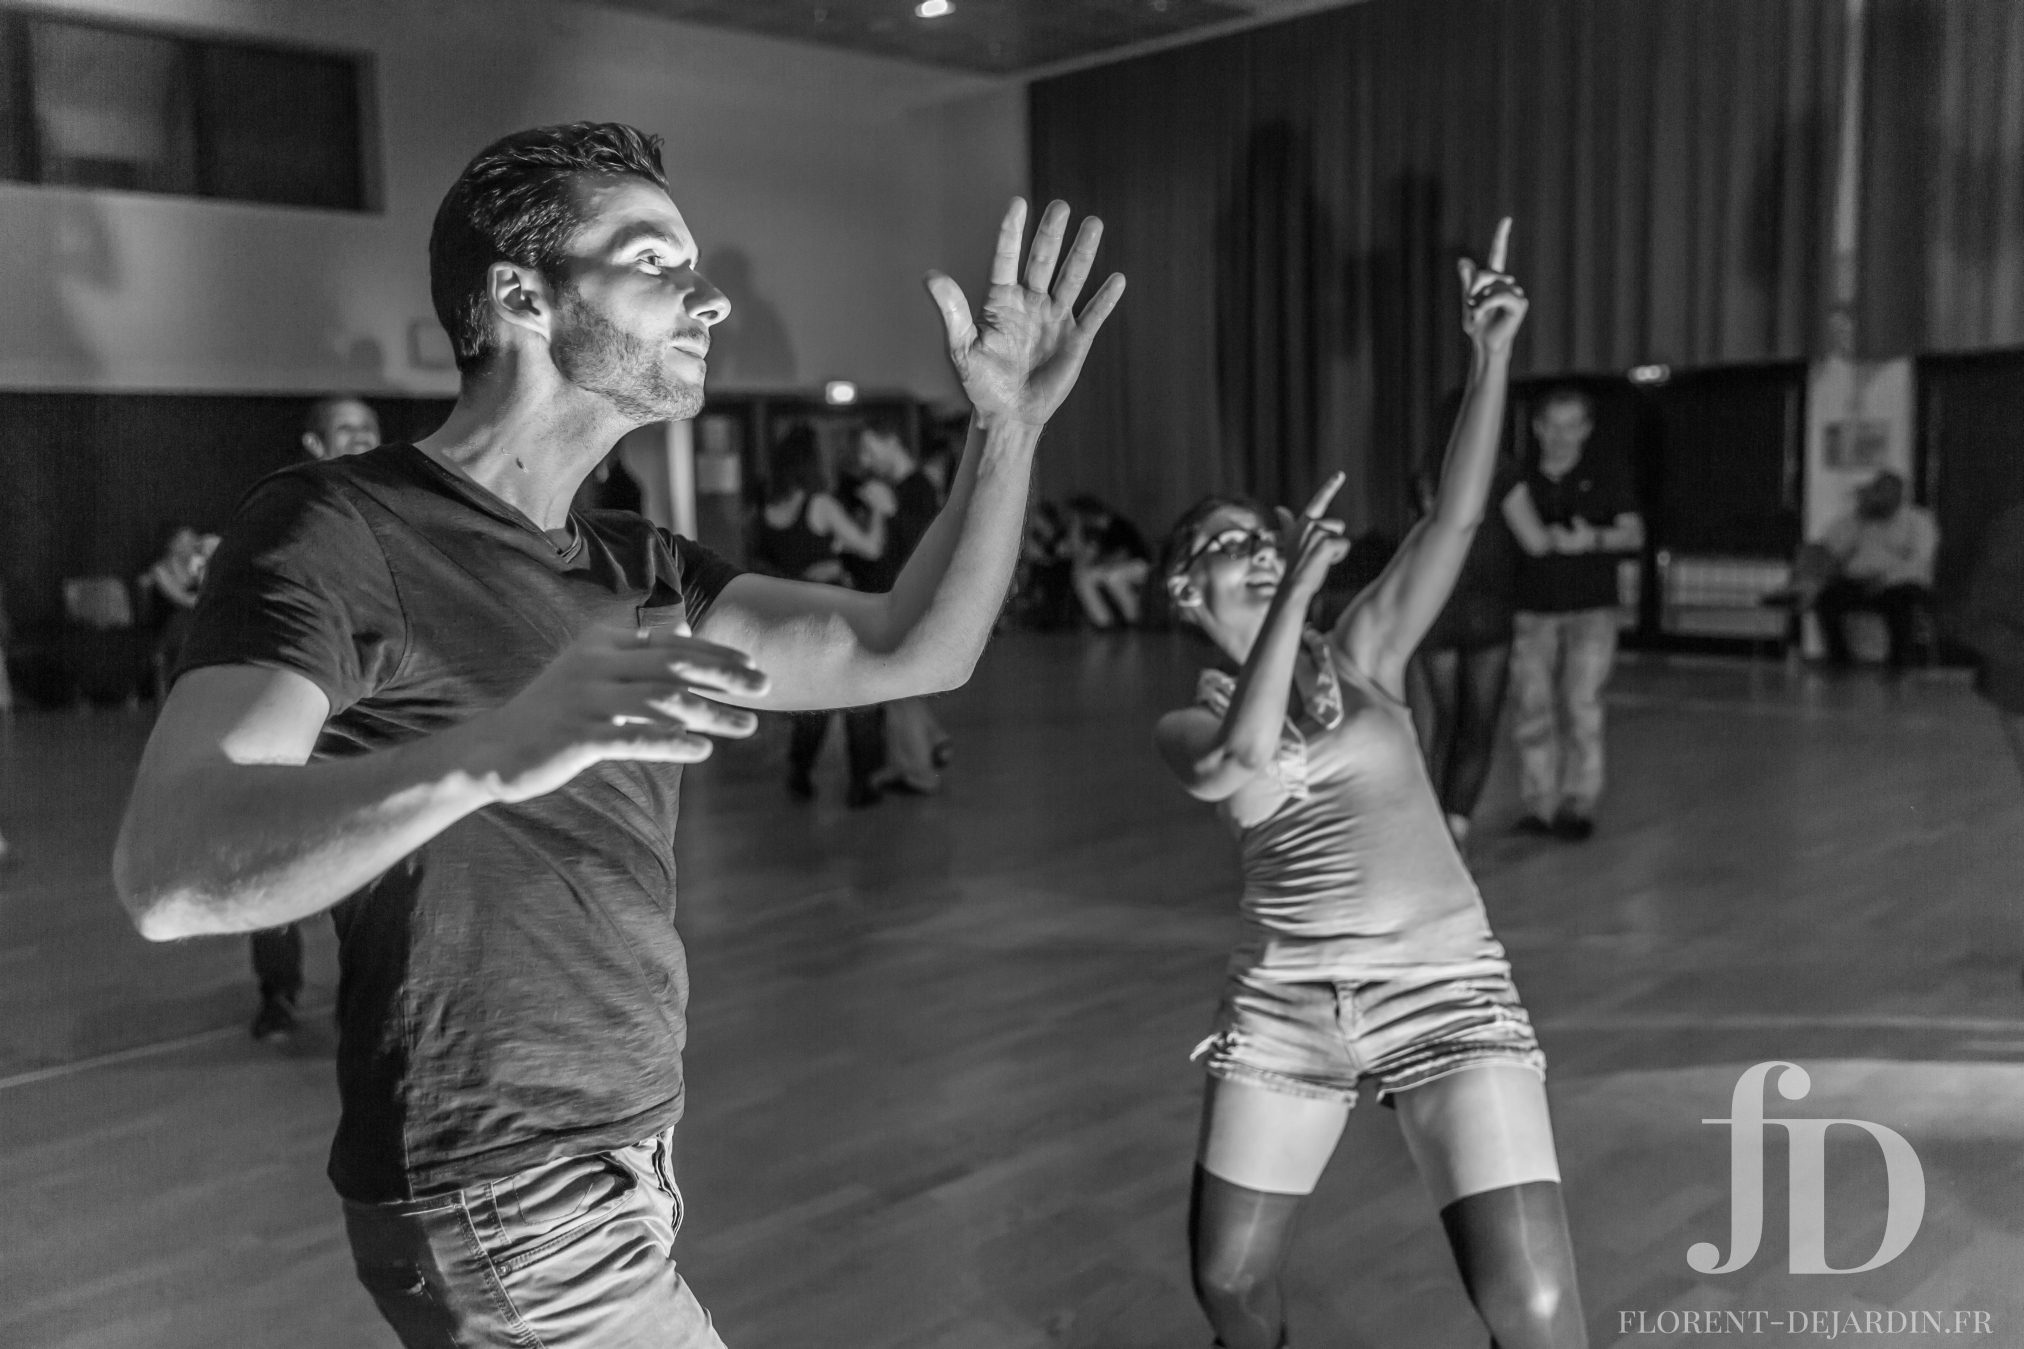 Photographie d'évènement de danse : salsa, west coast swing, bachata, kizomba - Strasbourg, Alsace, France